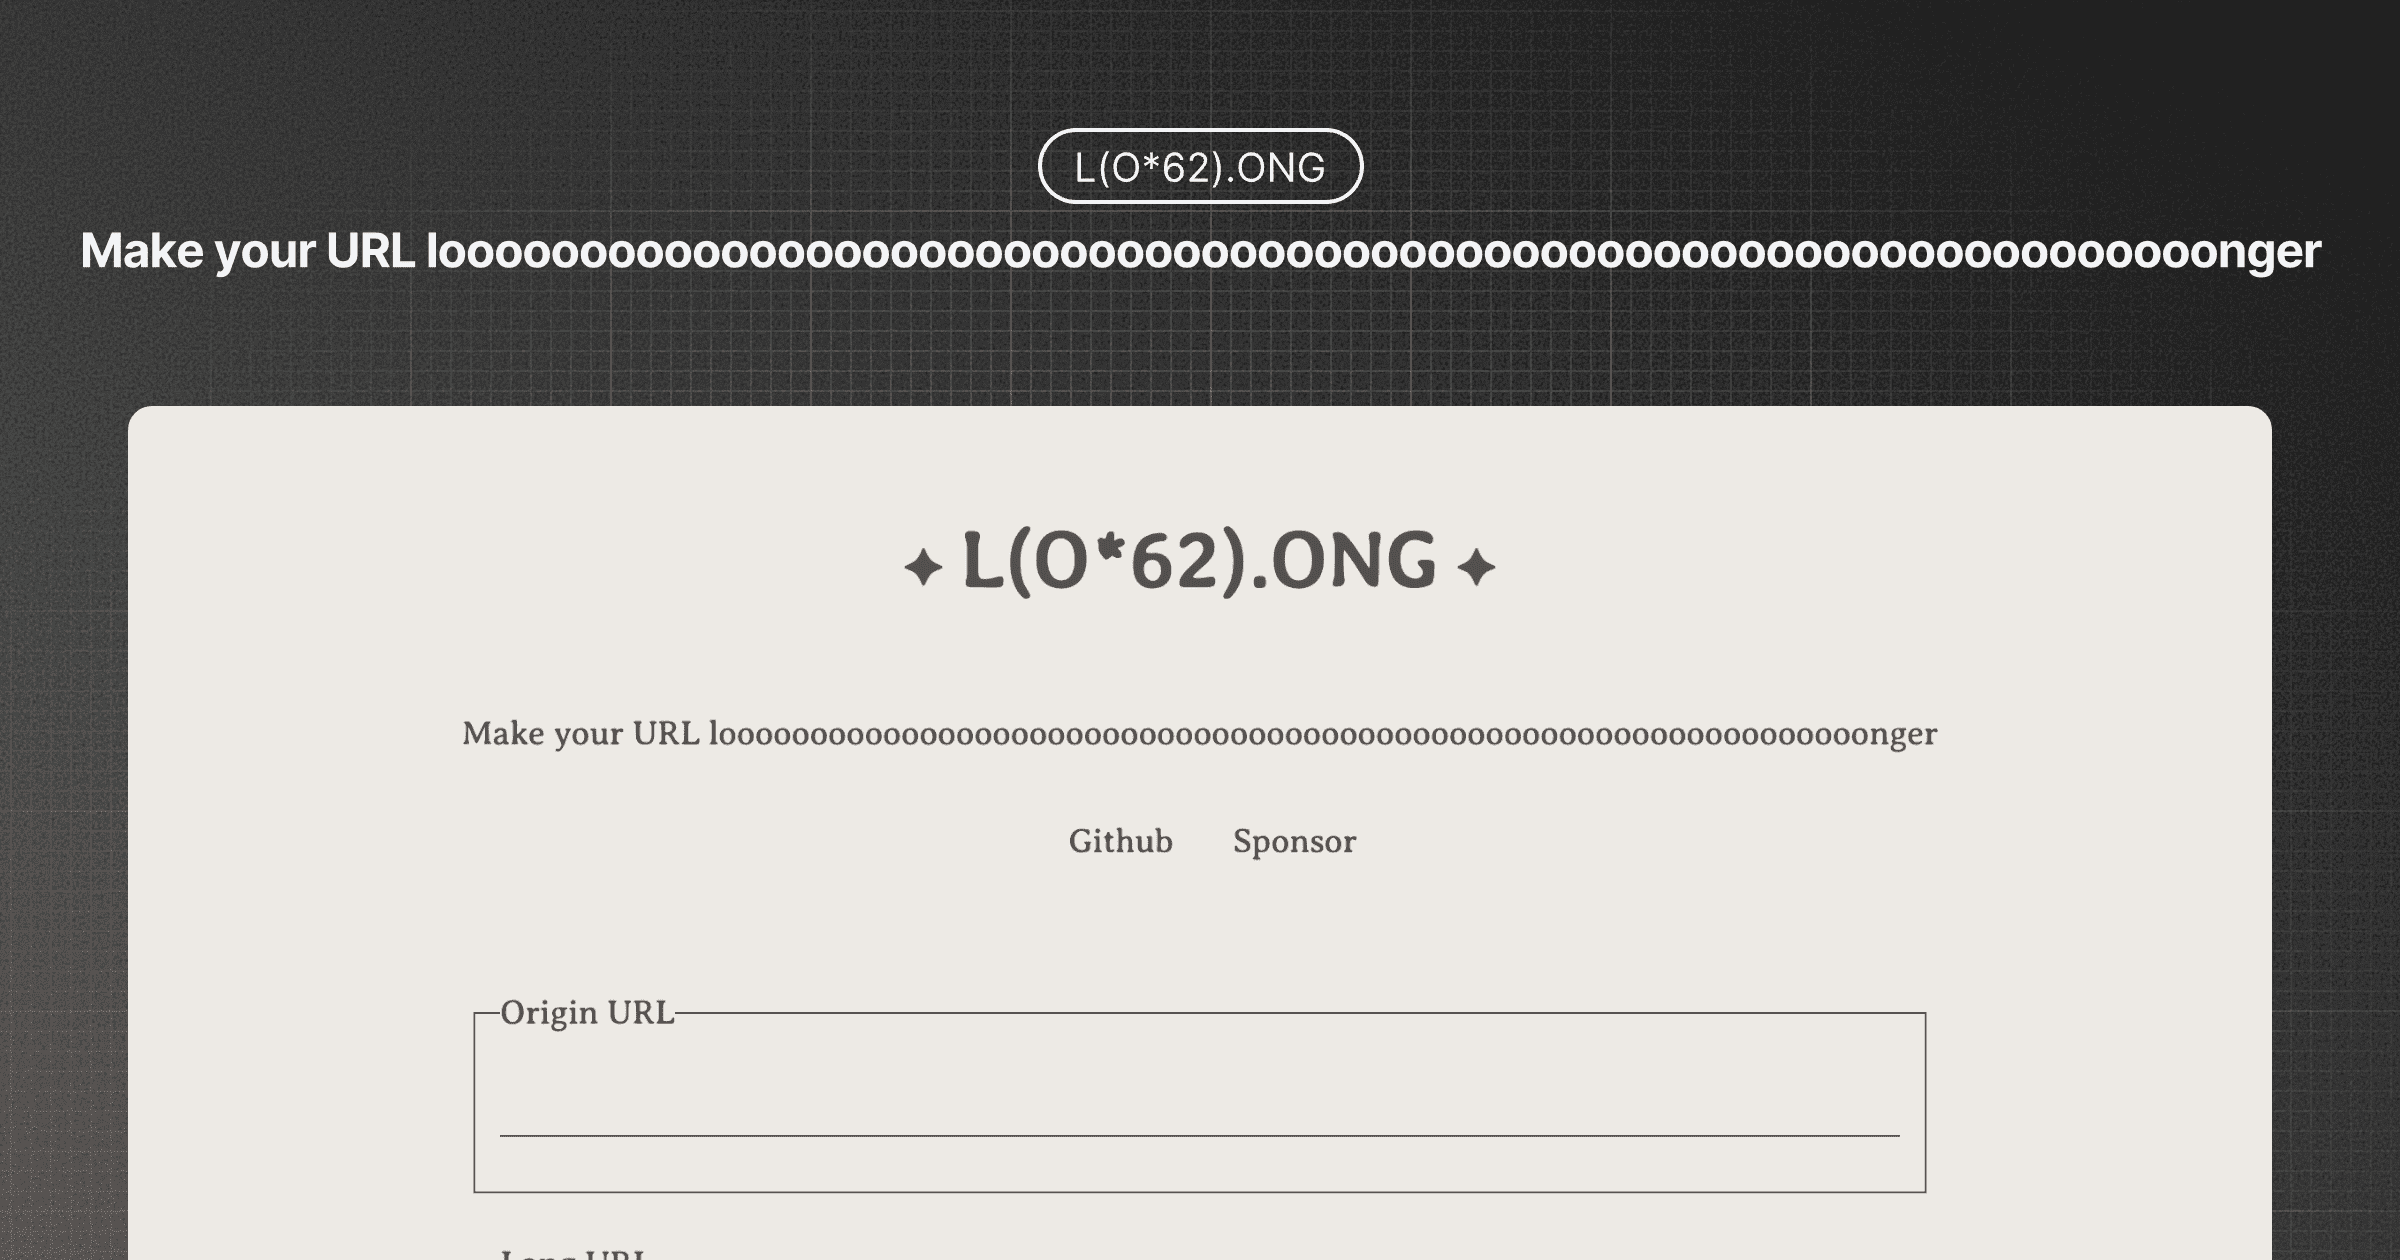 L(O*62).ONG: Make your URL longer